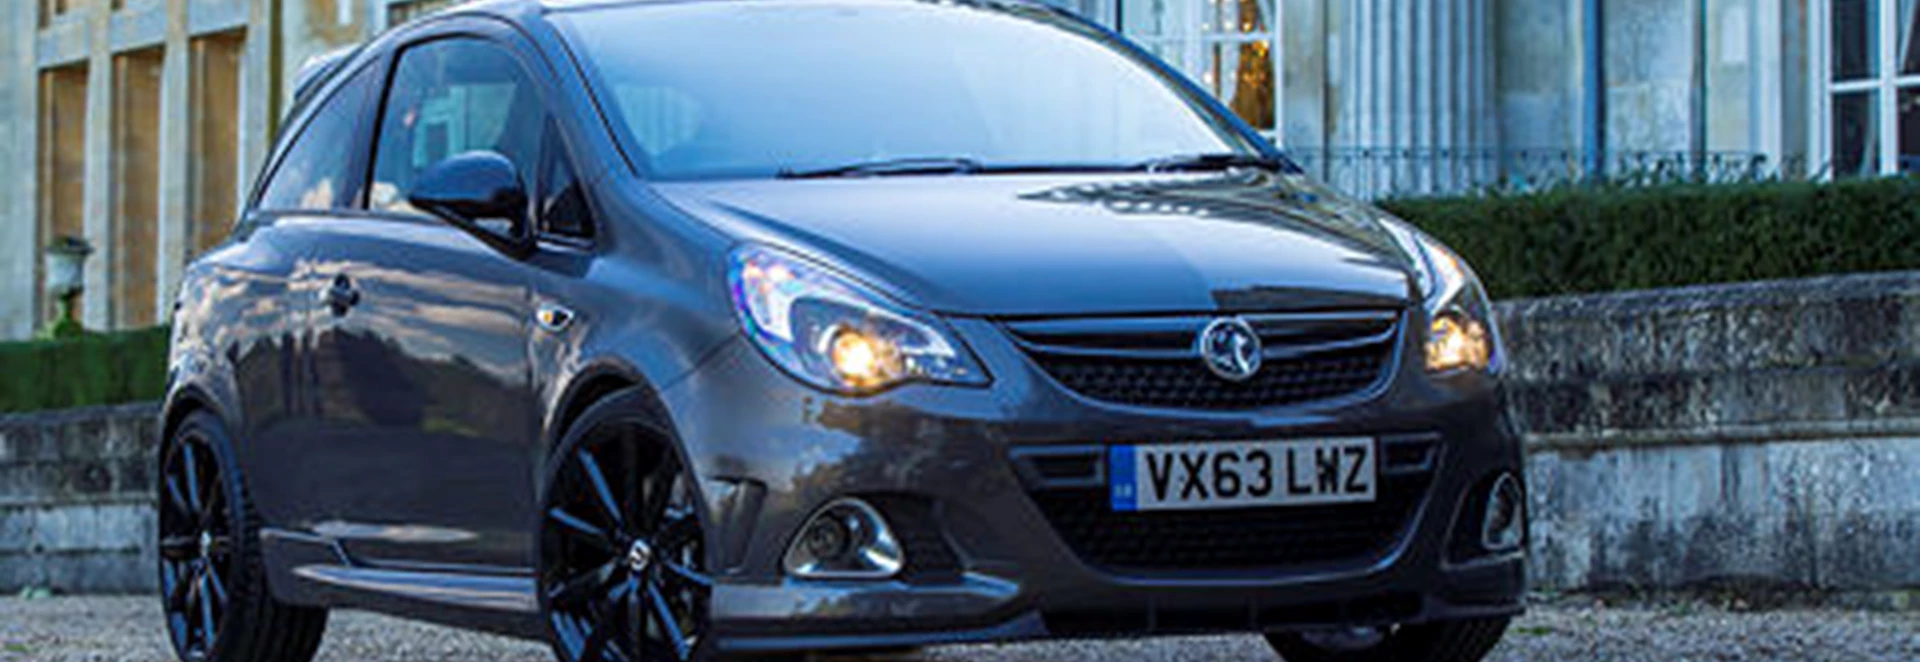 Vauxhall Corsa VXR Clubsport 